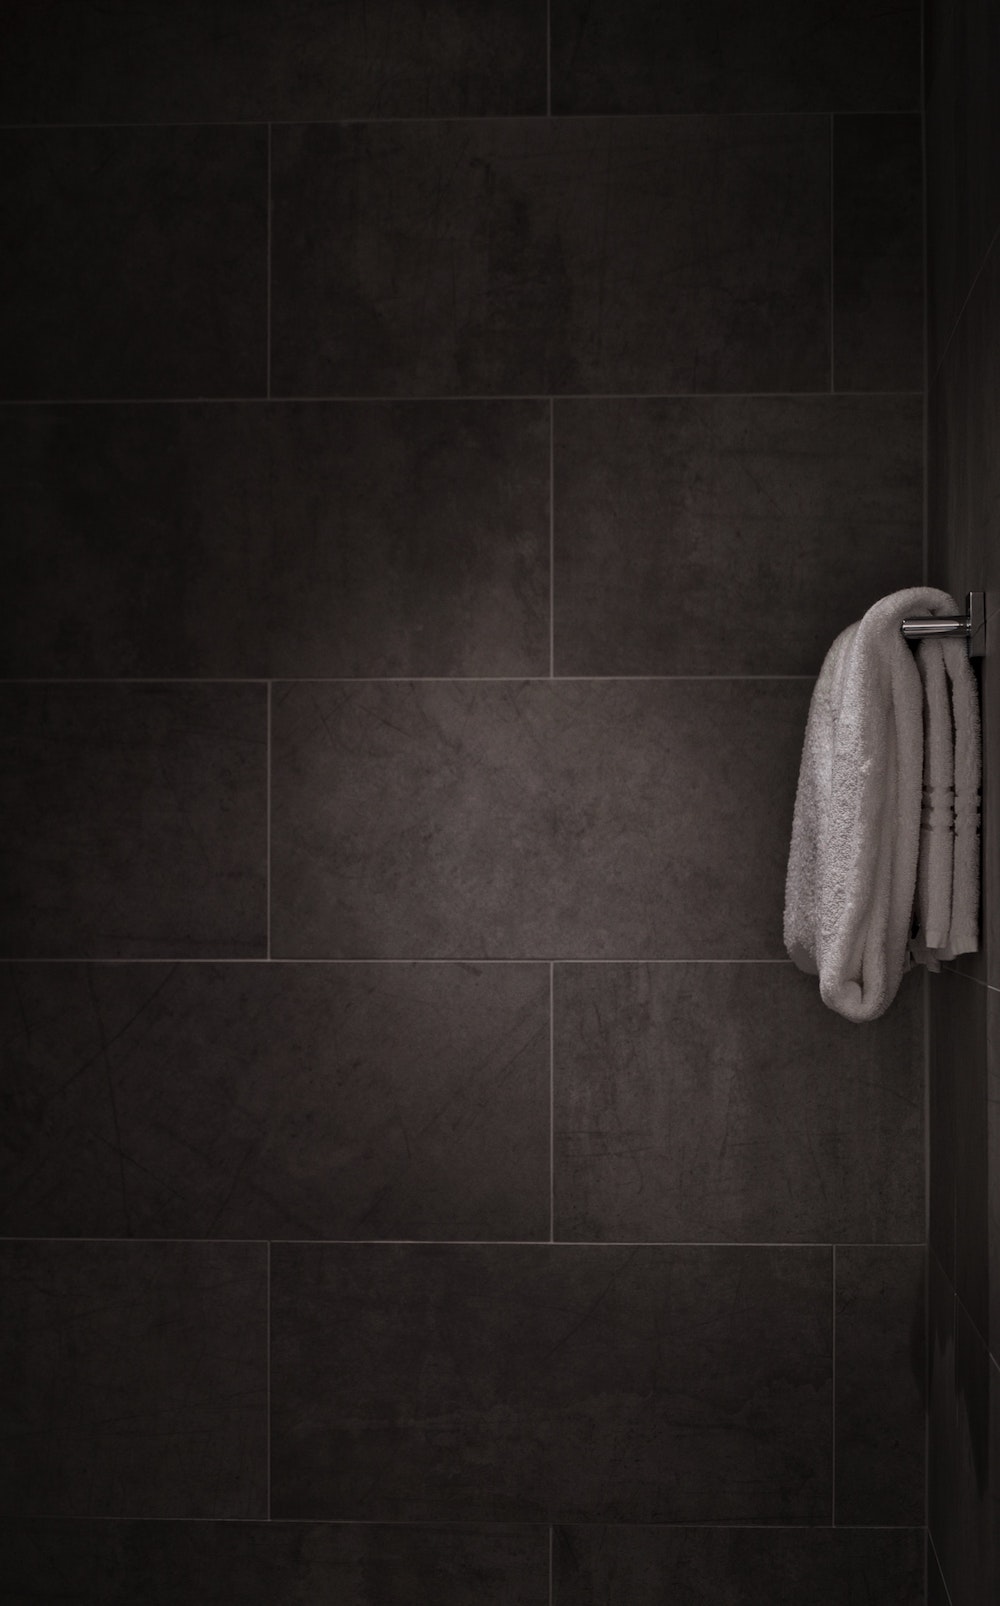 Nieuwe tegels voor je badkamer. Badkamertegels van Sanitairkamer #tegels #badkamer #badkamertegels #verbouwen #renovatie